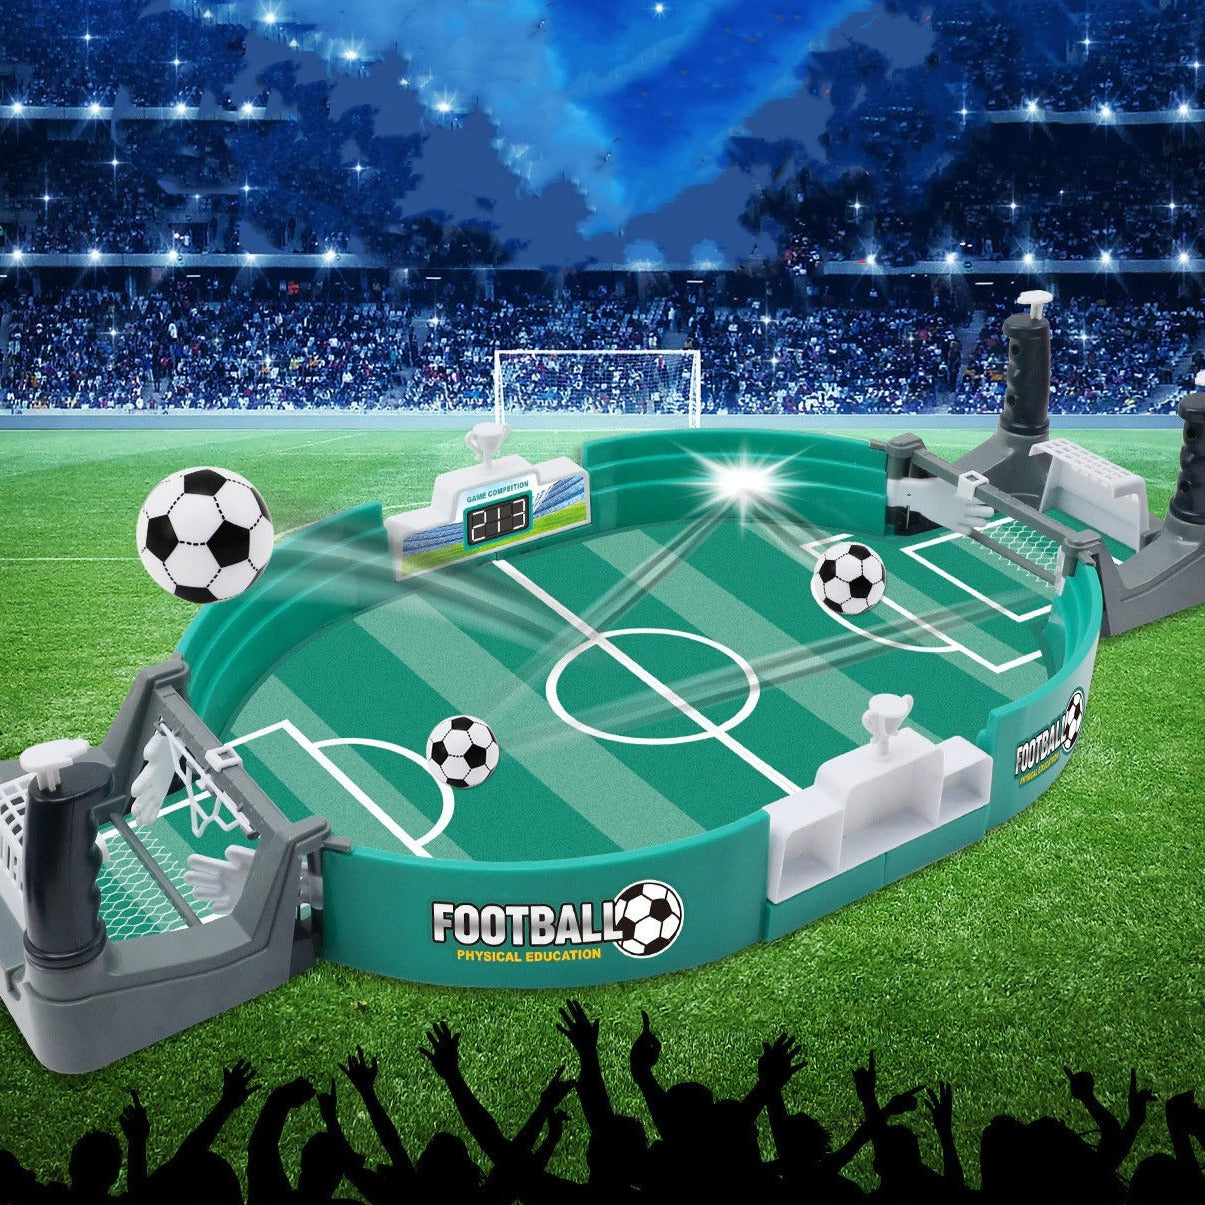 Jogo Mini Hóquei de Mesa e Futebol Pebolim - 2 em 1 - Brinca Mundo